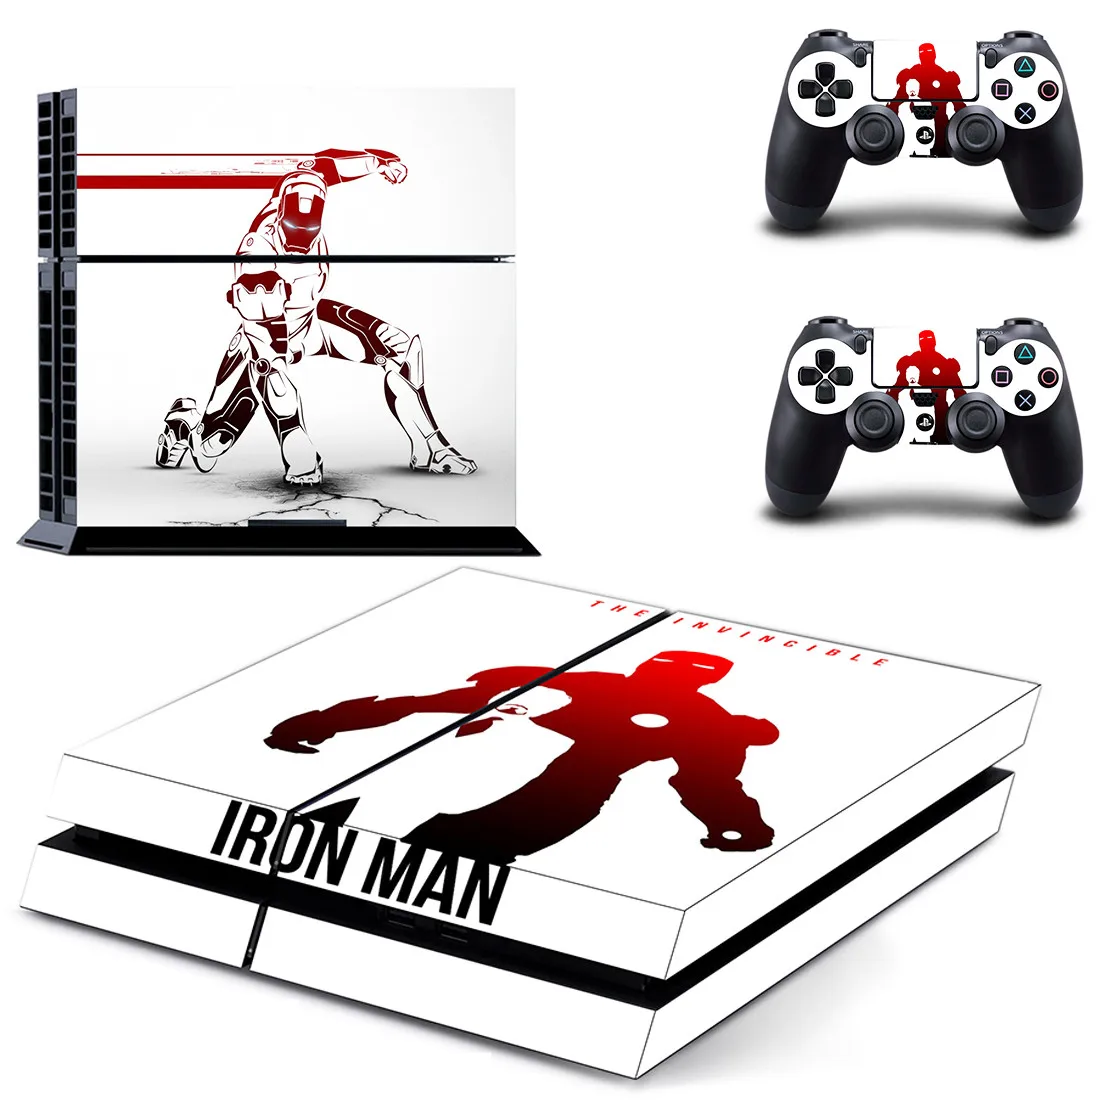 Мстители Железный человек PS4 Кожа Наклейка для Playstation 4 консоль и контроллер PS4 Скины Наклейка виниловая